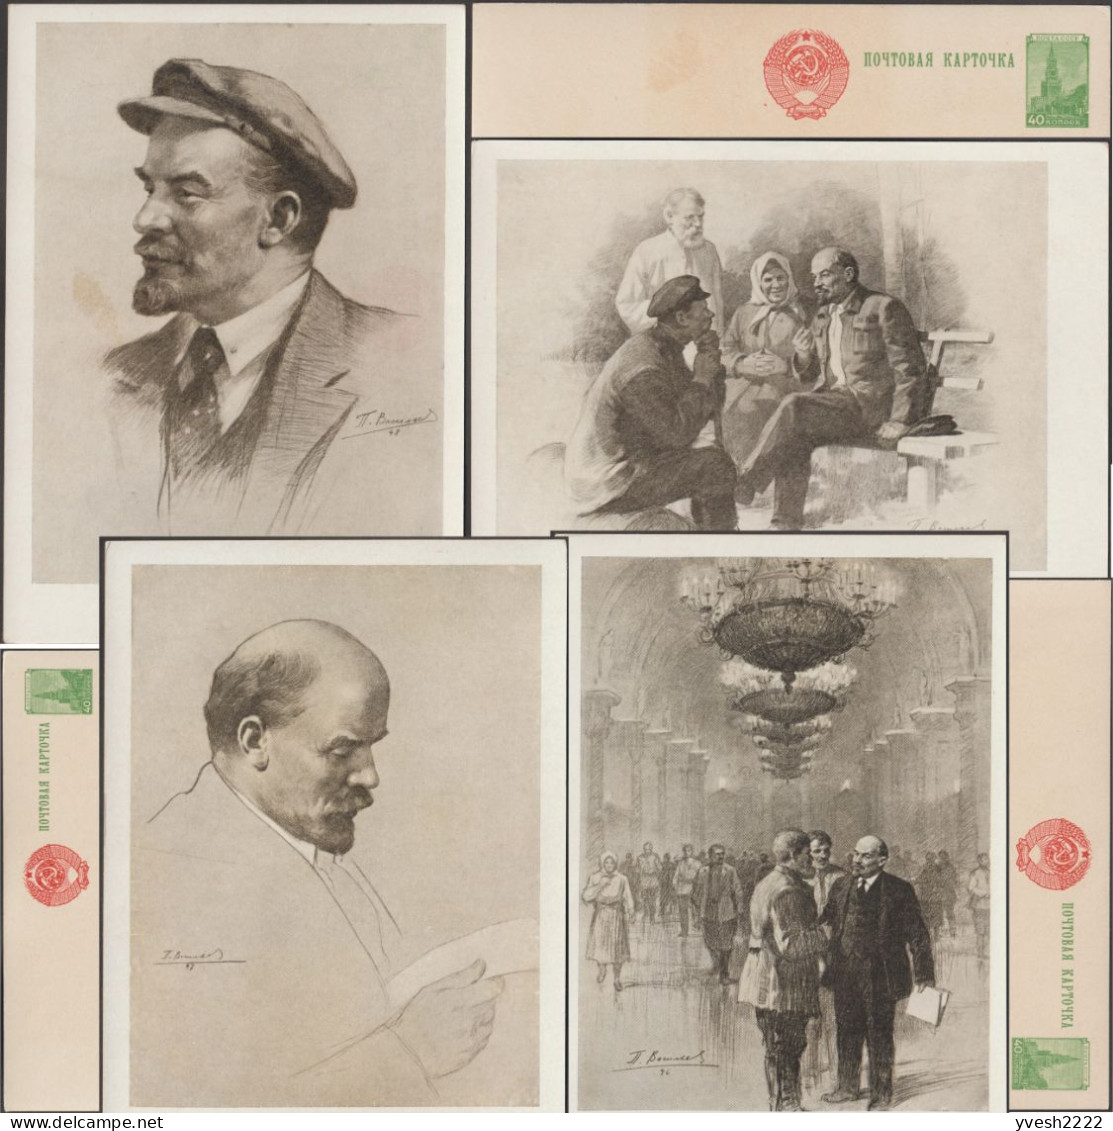 URSS 1957. 4 Entiers Postaux, Portraits De Lénine, Vladimir Ilitch Oulianov, Par Piotr Konstantinovich Vasiliev - Lenin